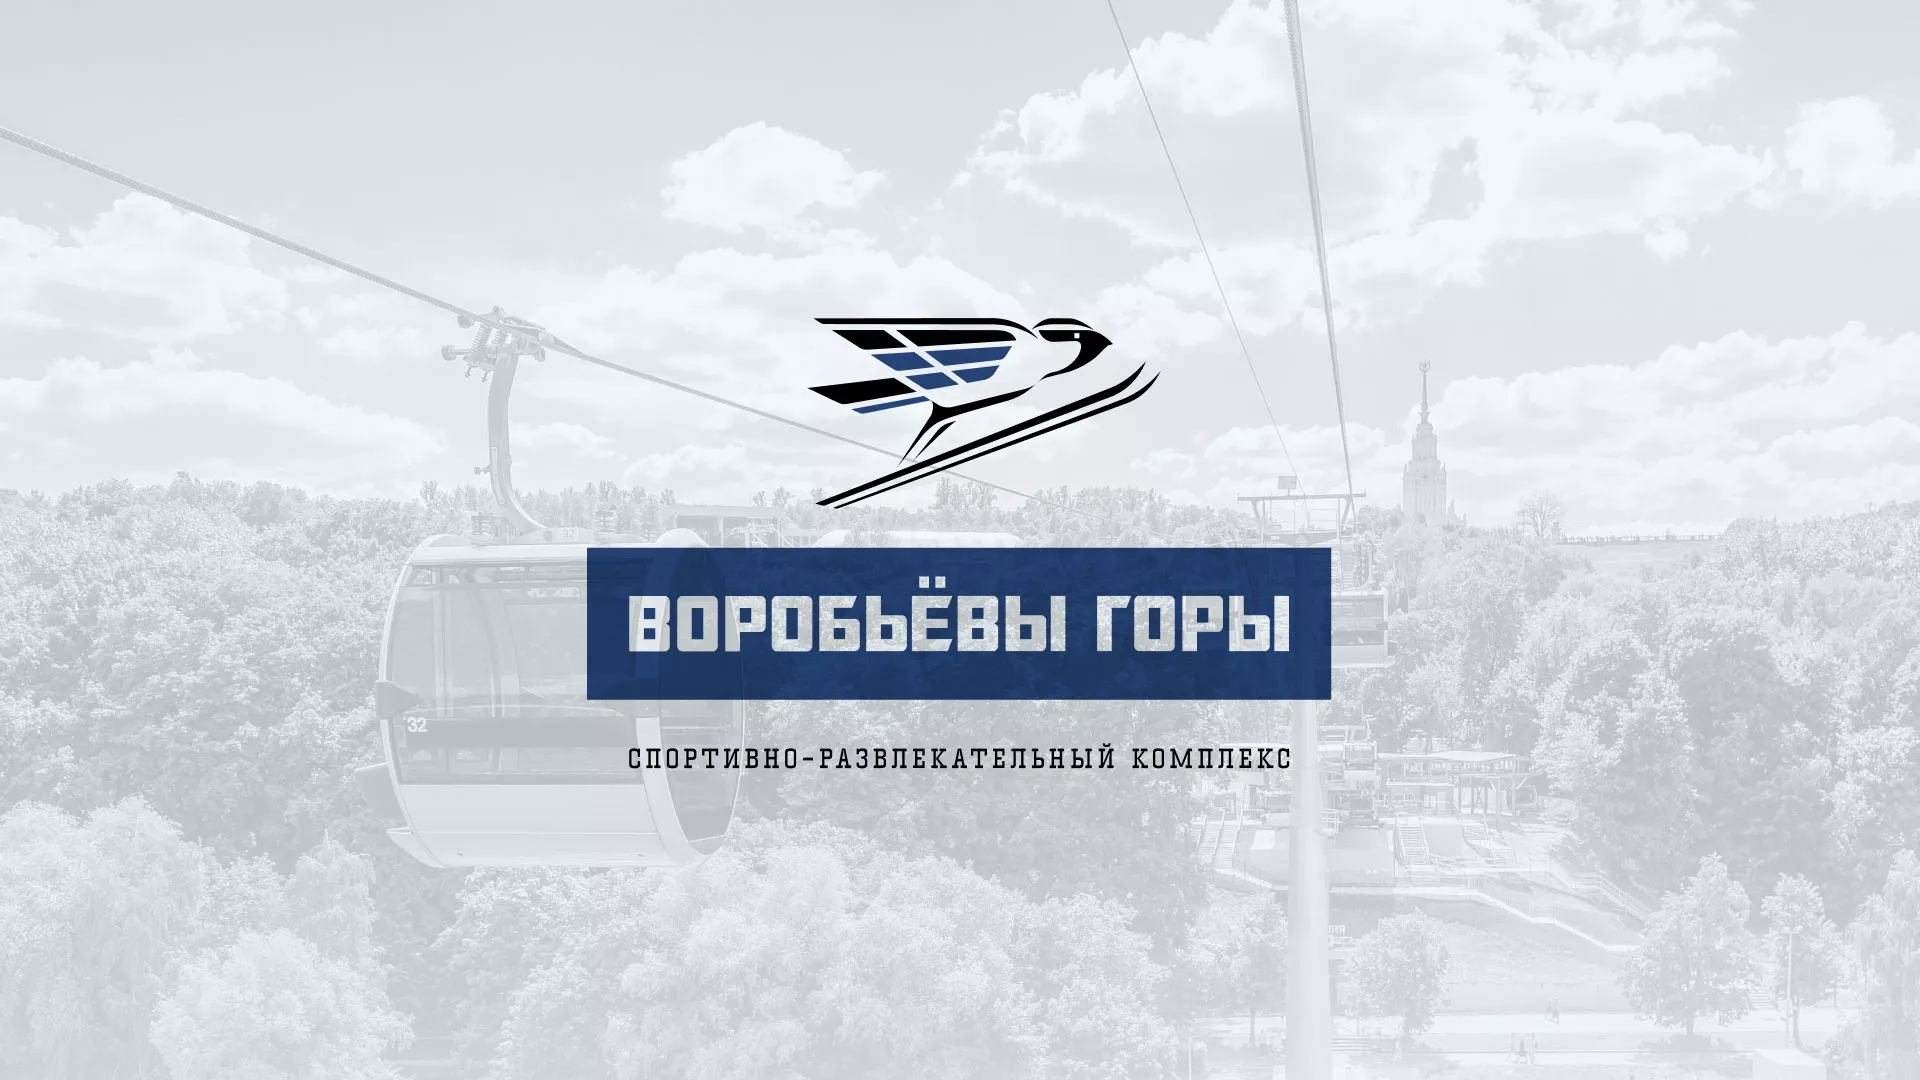 Разработка сайта в Славгороде для спортивно-развлекательного комплекса «Воробьёвы горы»